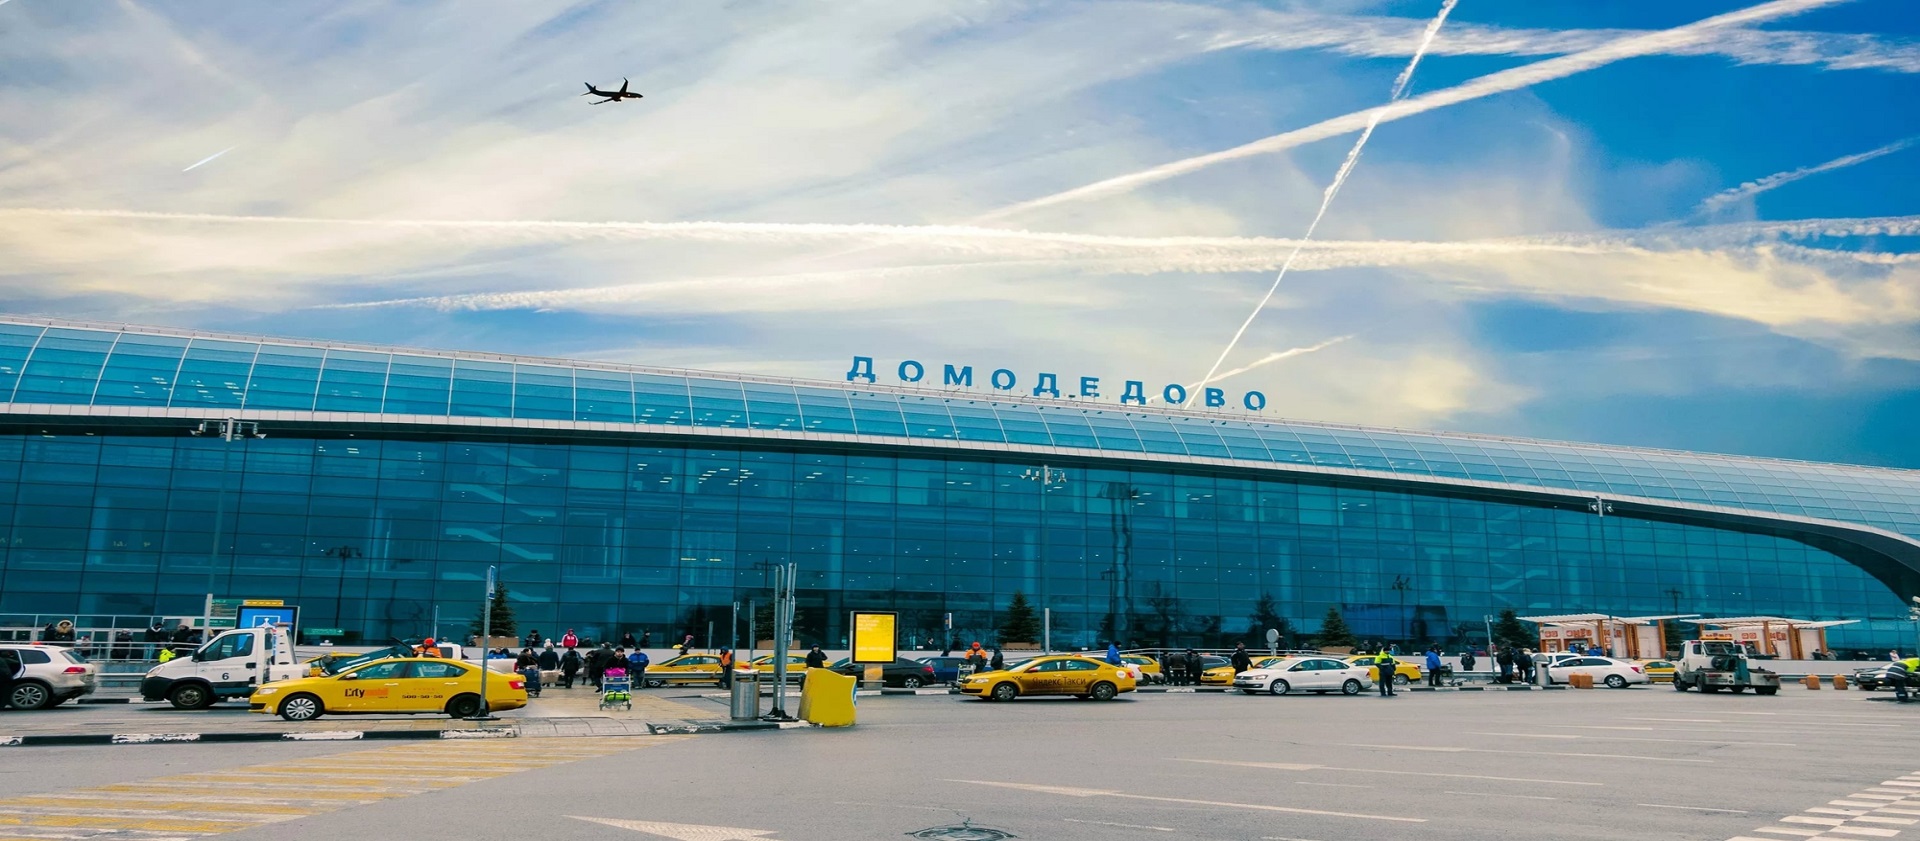 Аэропорт Домодедово, г. Москвы